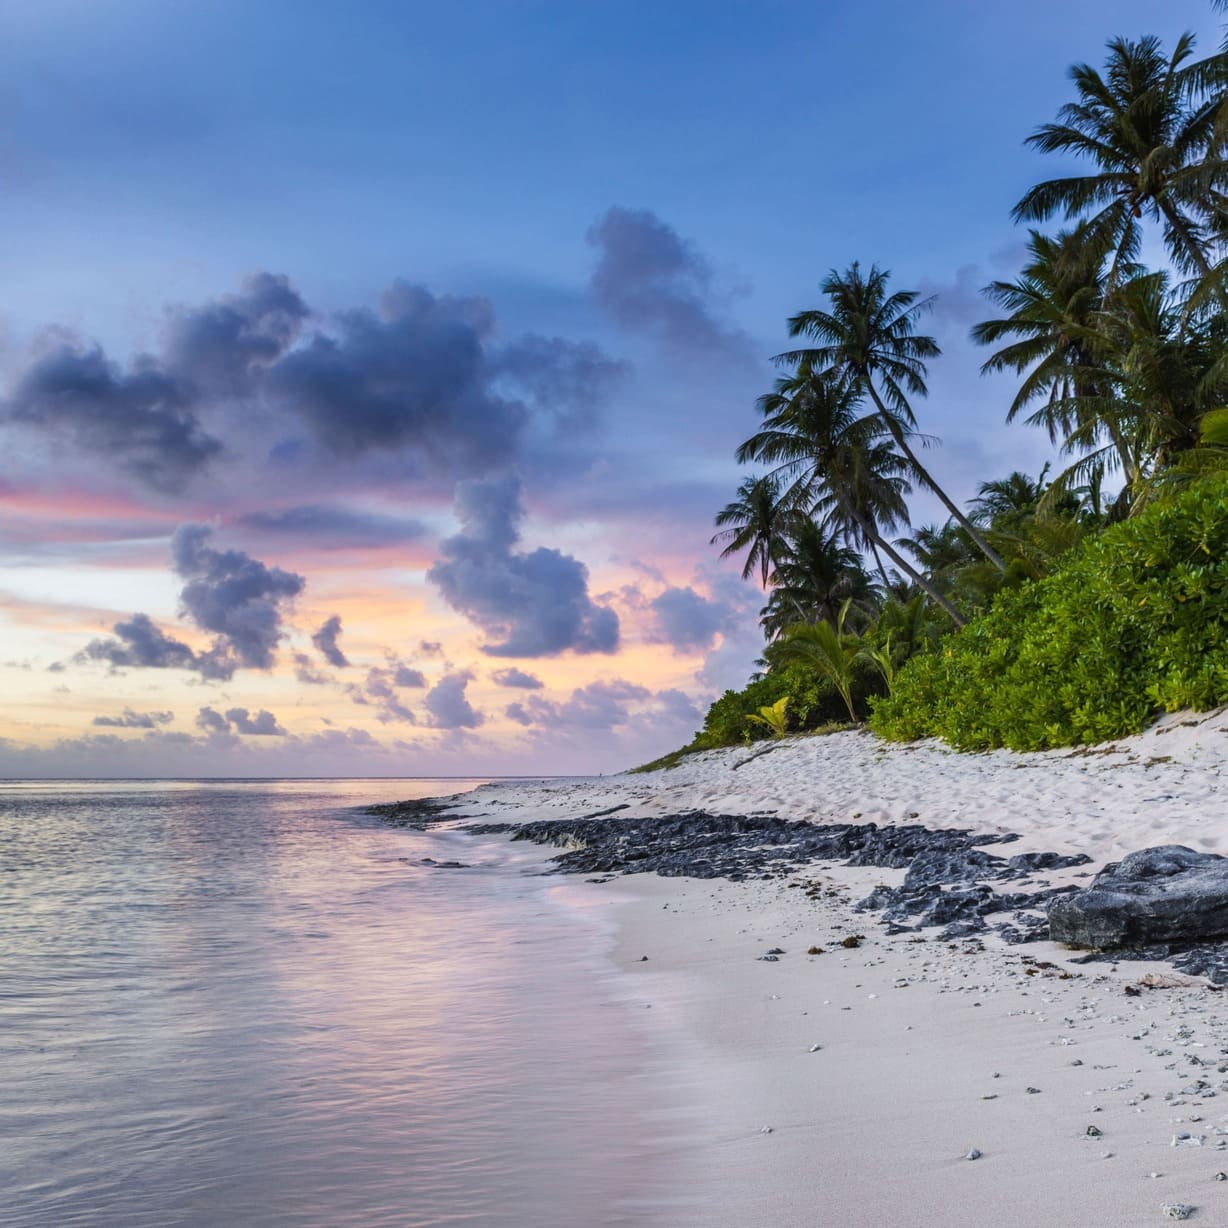 Schönes Bild von einem Strand mit Palmen am Ozean